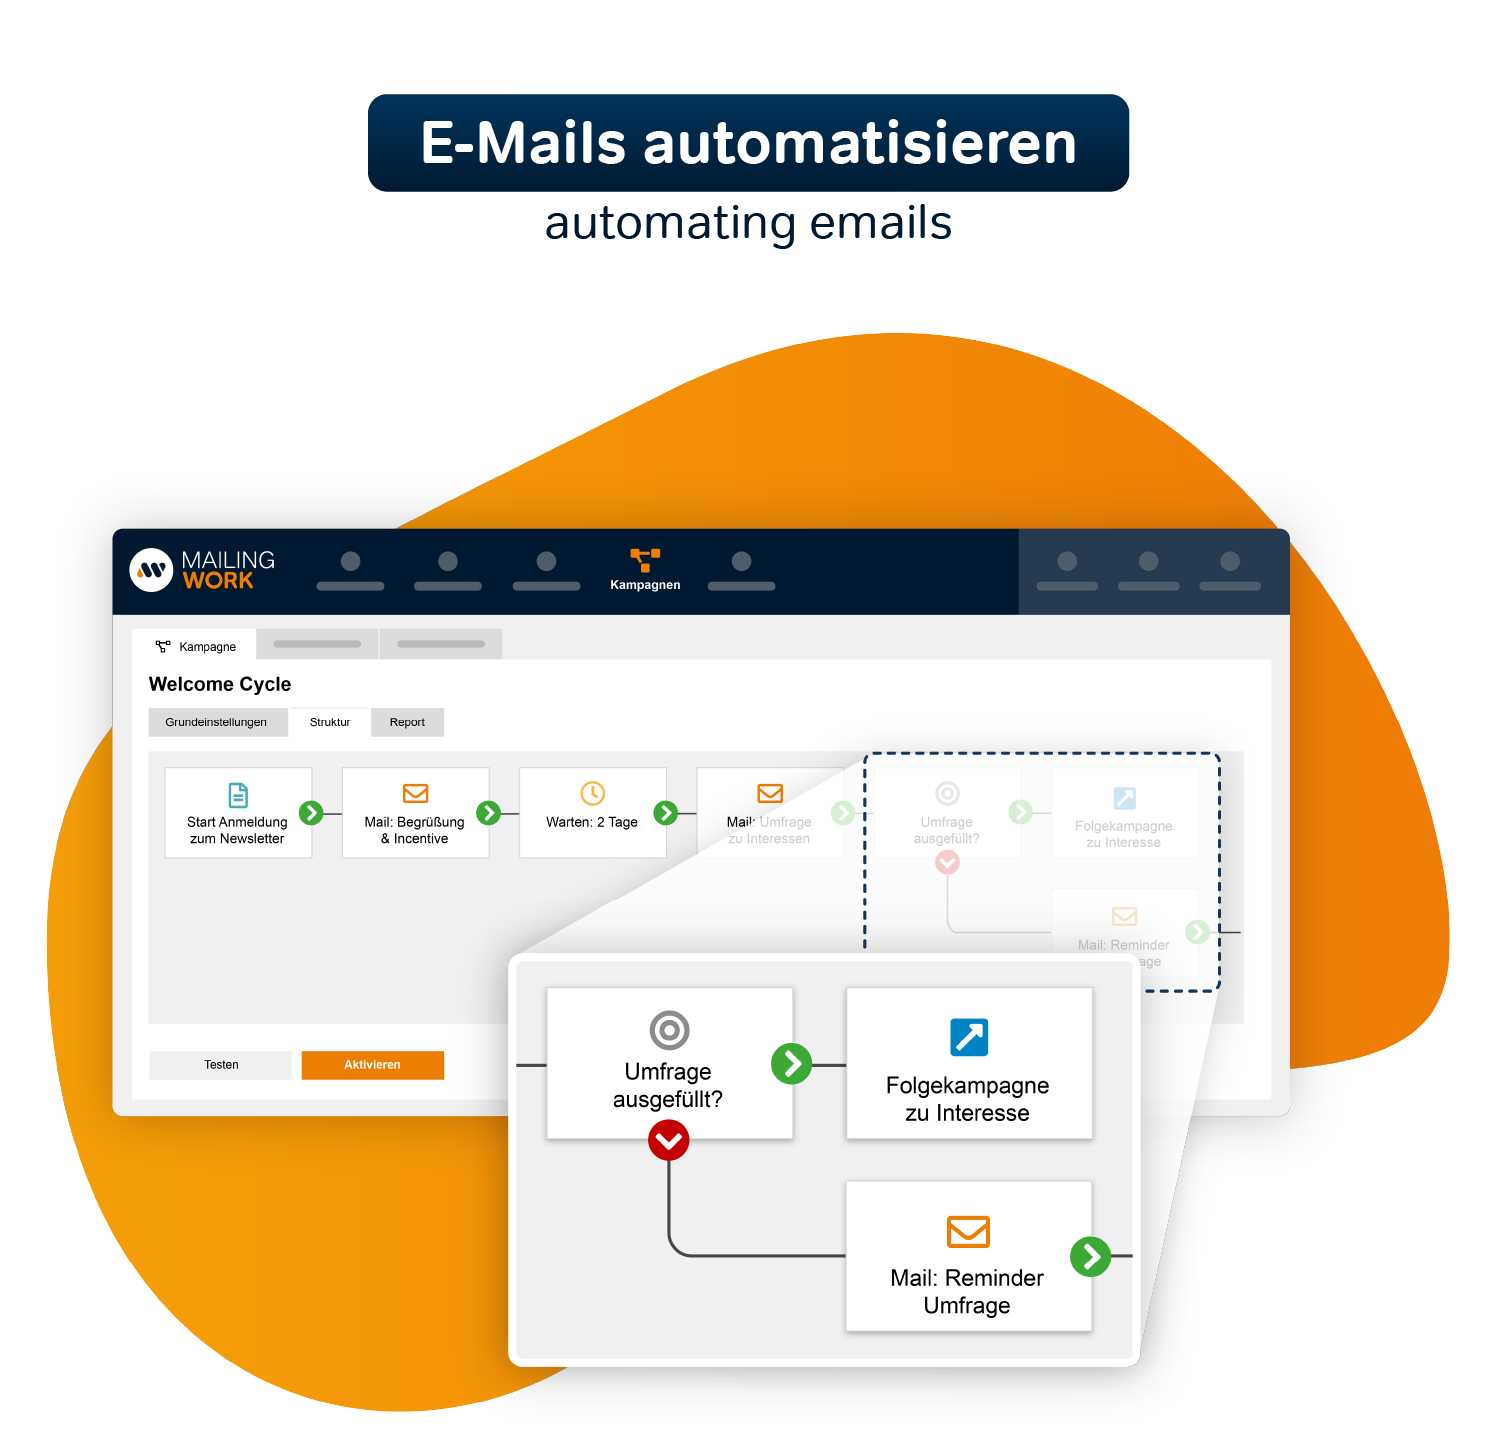 Automating emails
Set up once, benefit permanently

E-Mails automatisieren
Einmal einrichten, dauerhaft profitieren